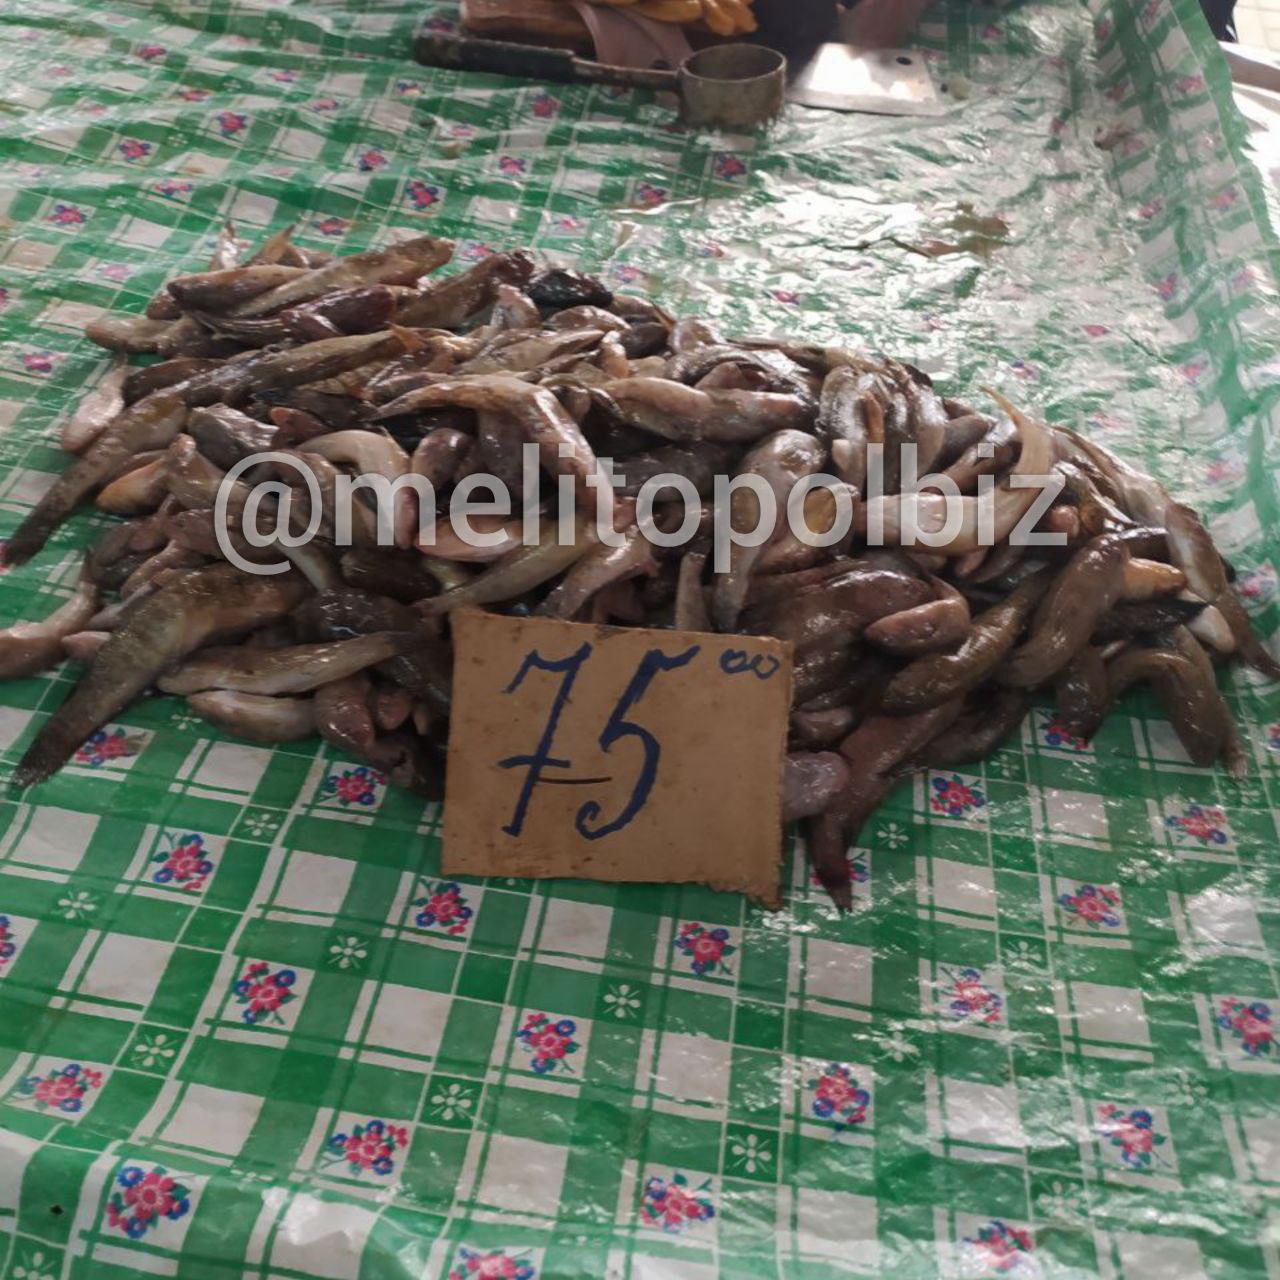 Скільки коштує на ринку в Мелітополі свіжа риба 3